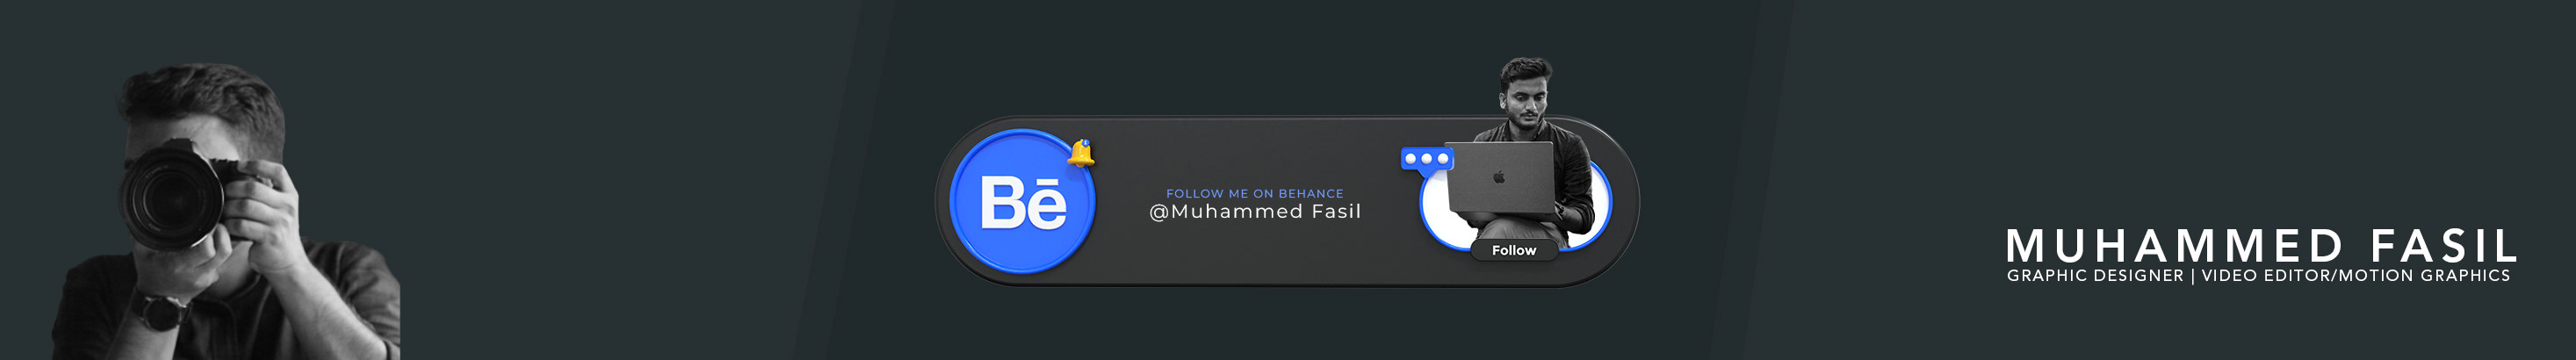 Profil-Banner von Muhammed Fasil